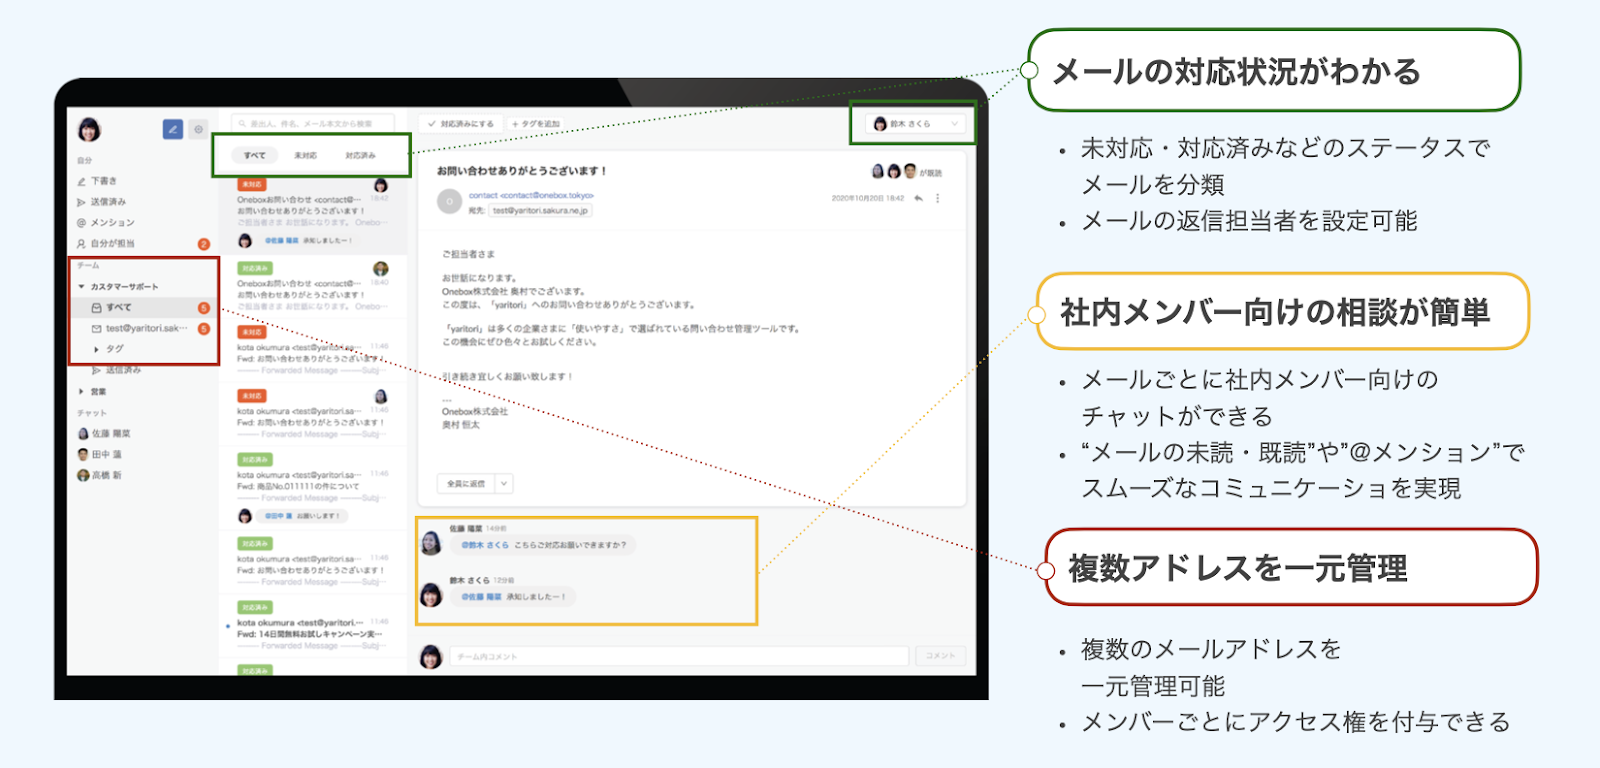 ECサイト一元管理システムである、yaritoriの特徴がわかりやすく記載されているメッセージ画面の写真